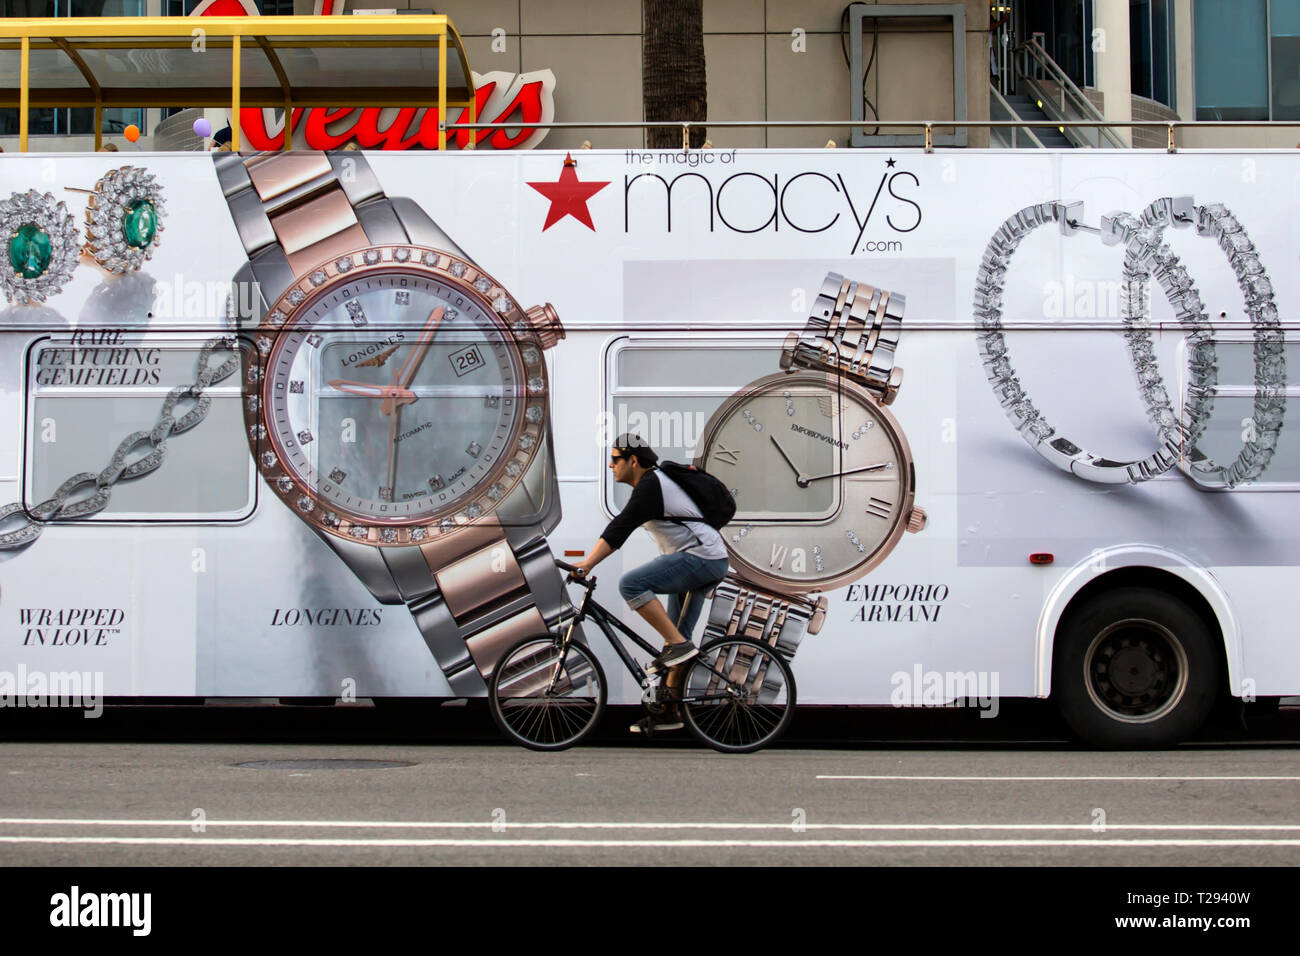 LOS ANGELES - Radfahrer vor einem tourbus Werbung Macy's Schmuck und Uhren auf dem Hollywood Boulevard. Stockfoto